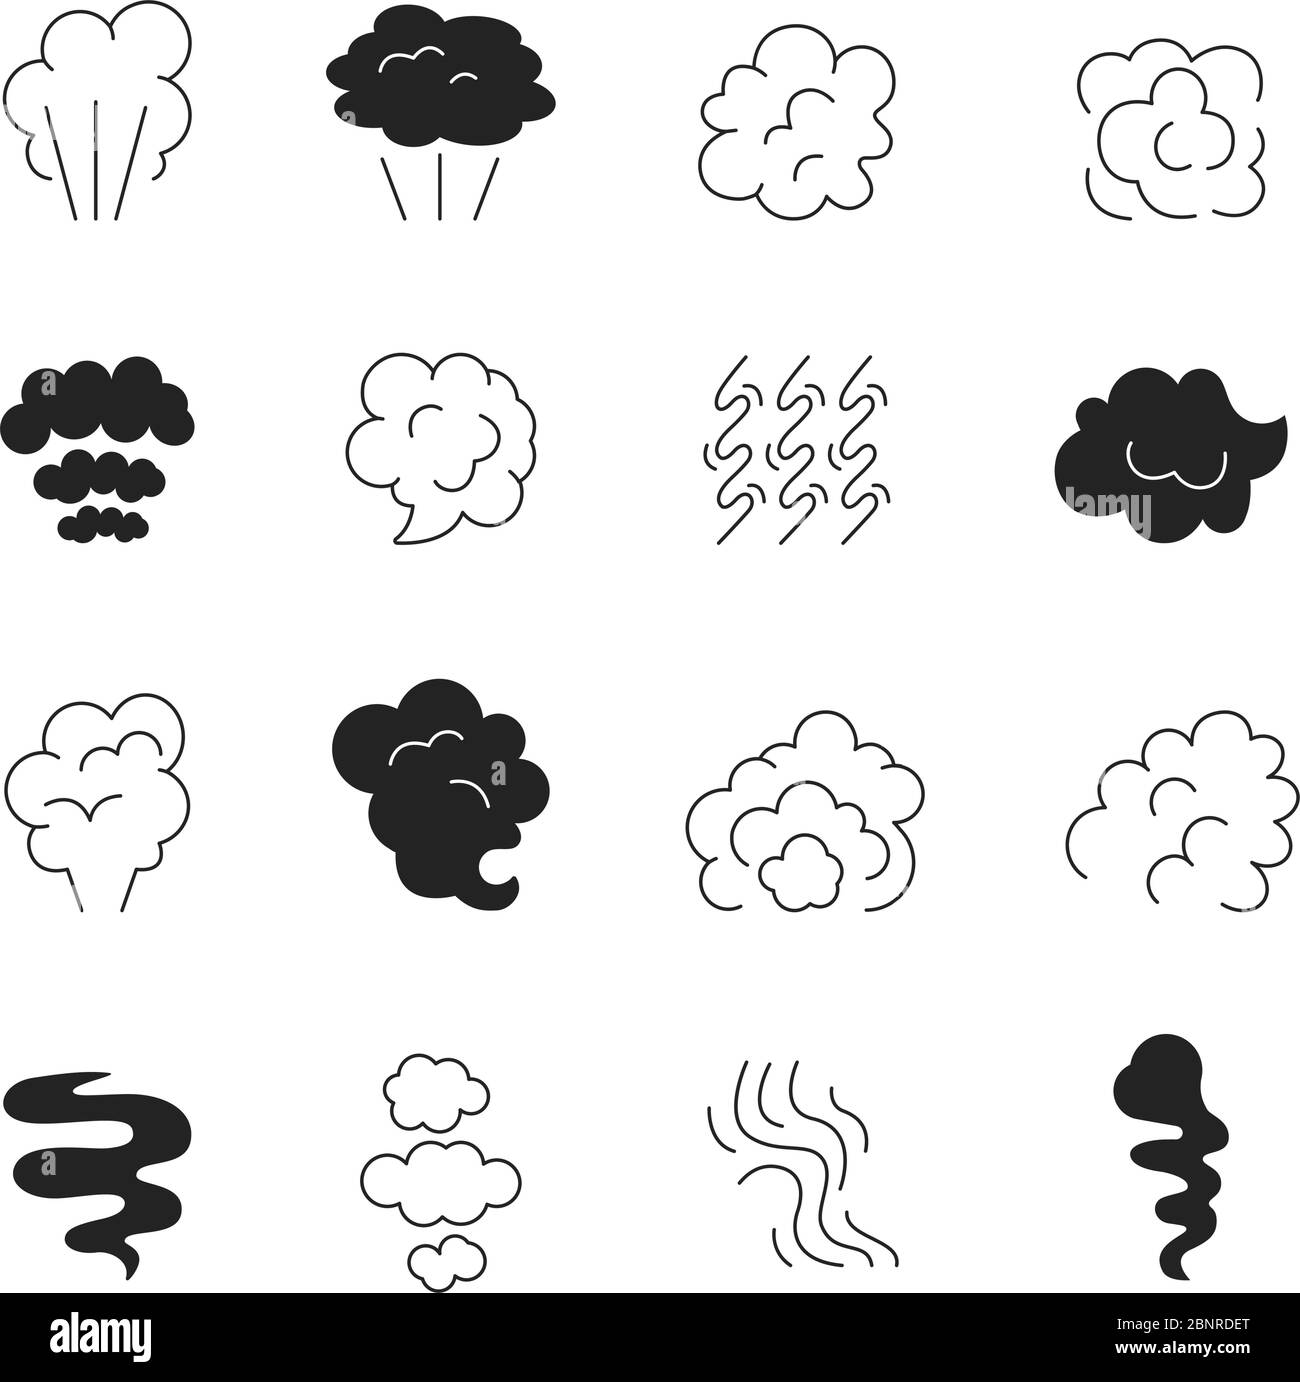 Icona della linea di fumo. Vapore odore e fumatore nuvole simboli stilizzati silhouette immagini vettoriali isolate Illustrazione Vettoriale